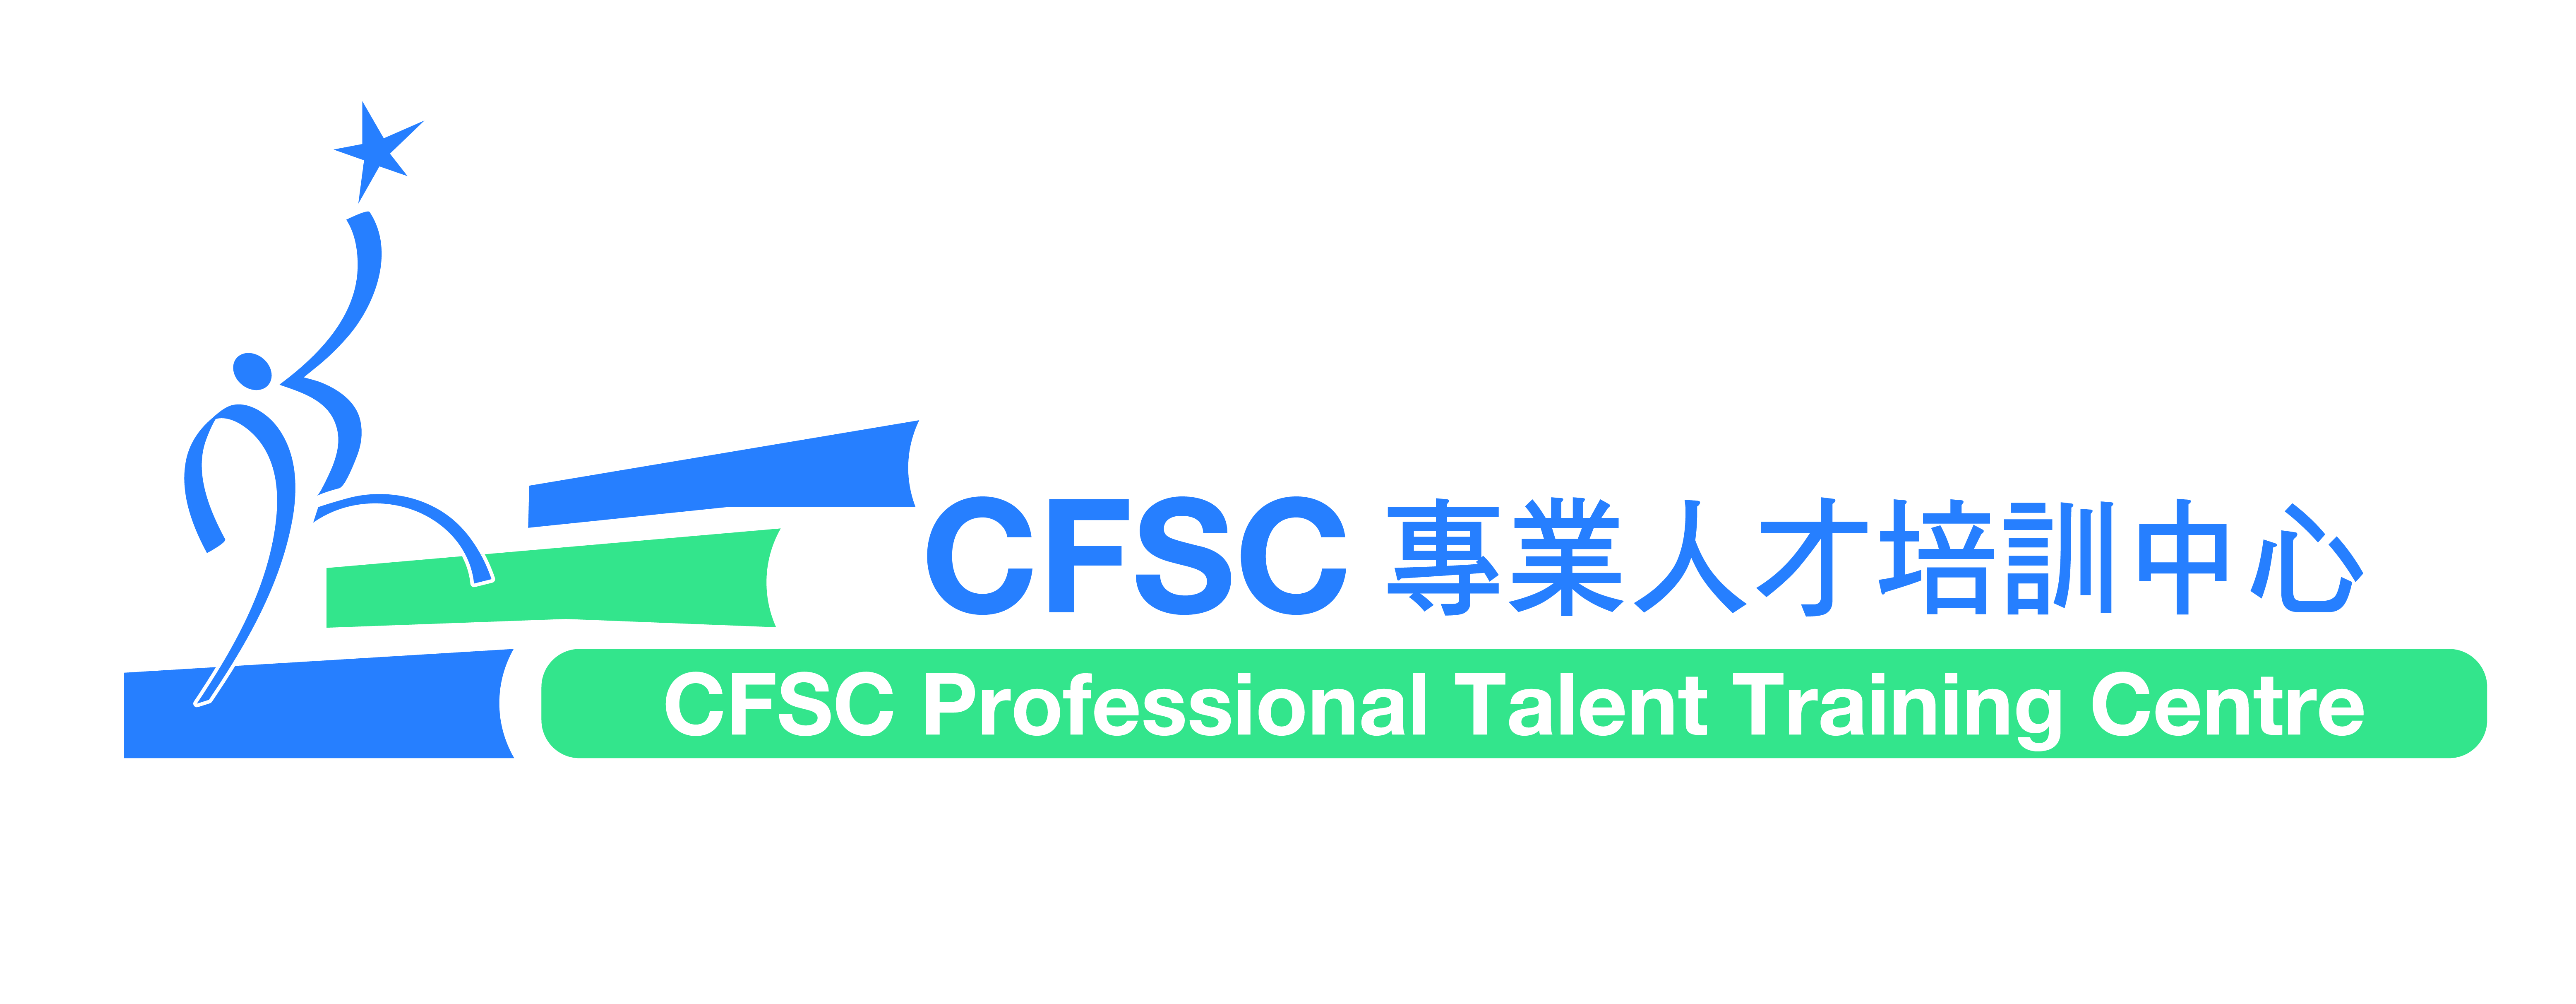 CFSC专业人才培训中心标志